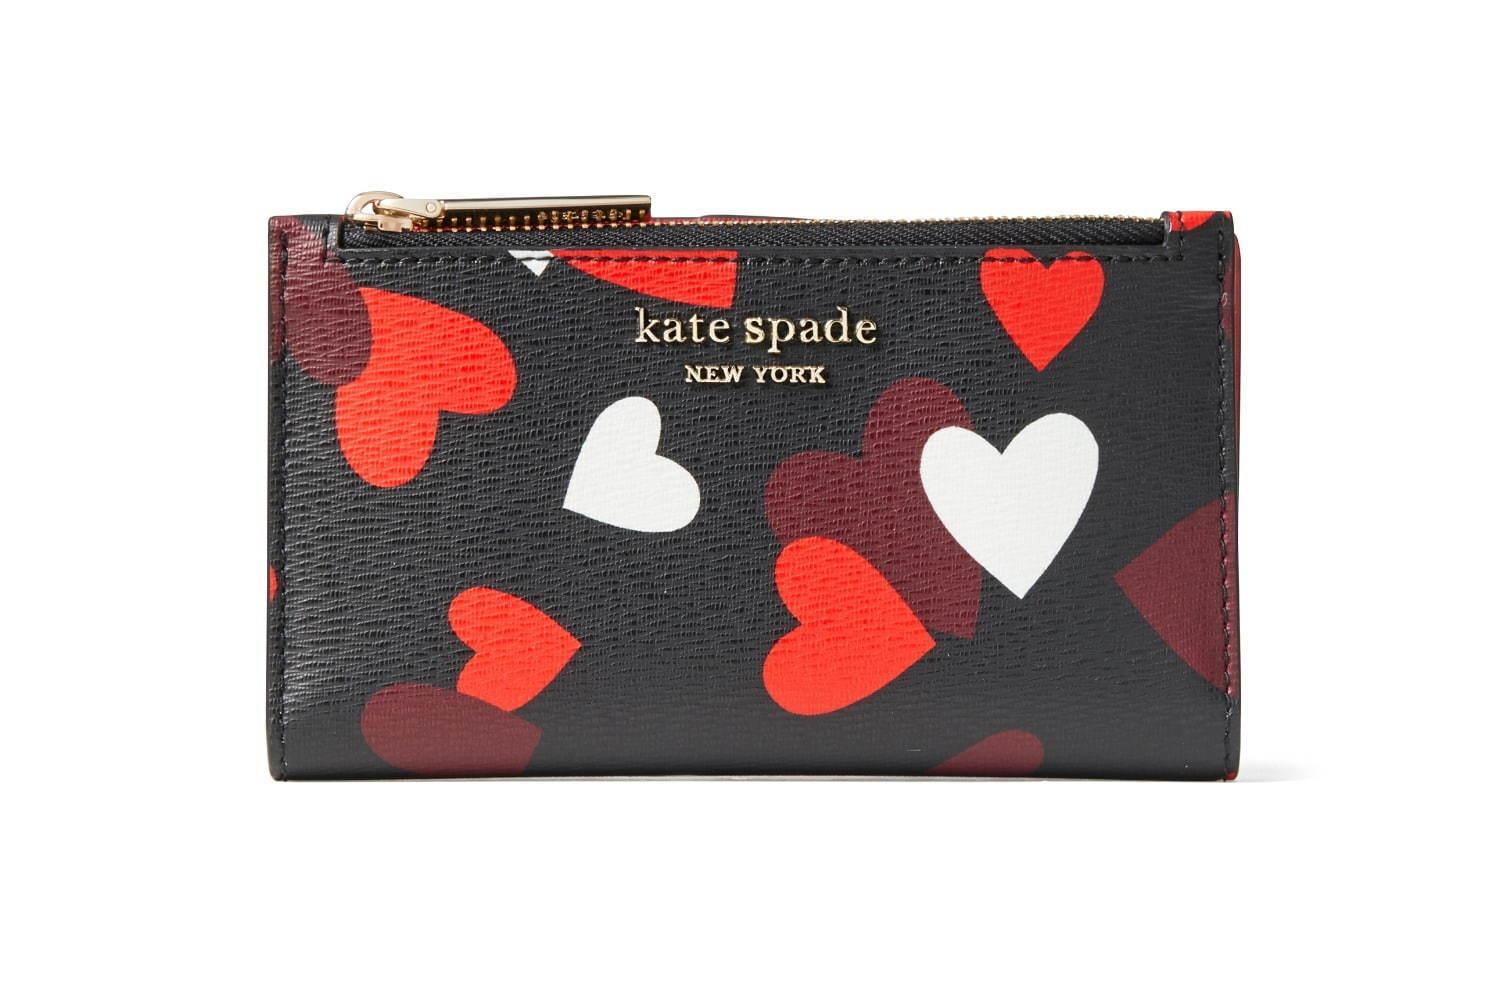 ケイト・スペード2021年バレンタインギフト、“ハート”モチーフの財布&3Dコインパース コピー